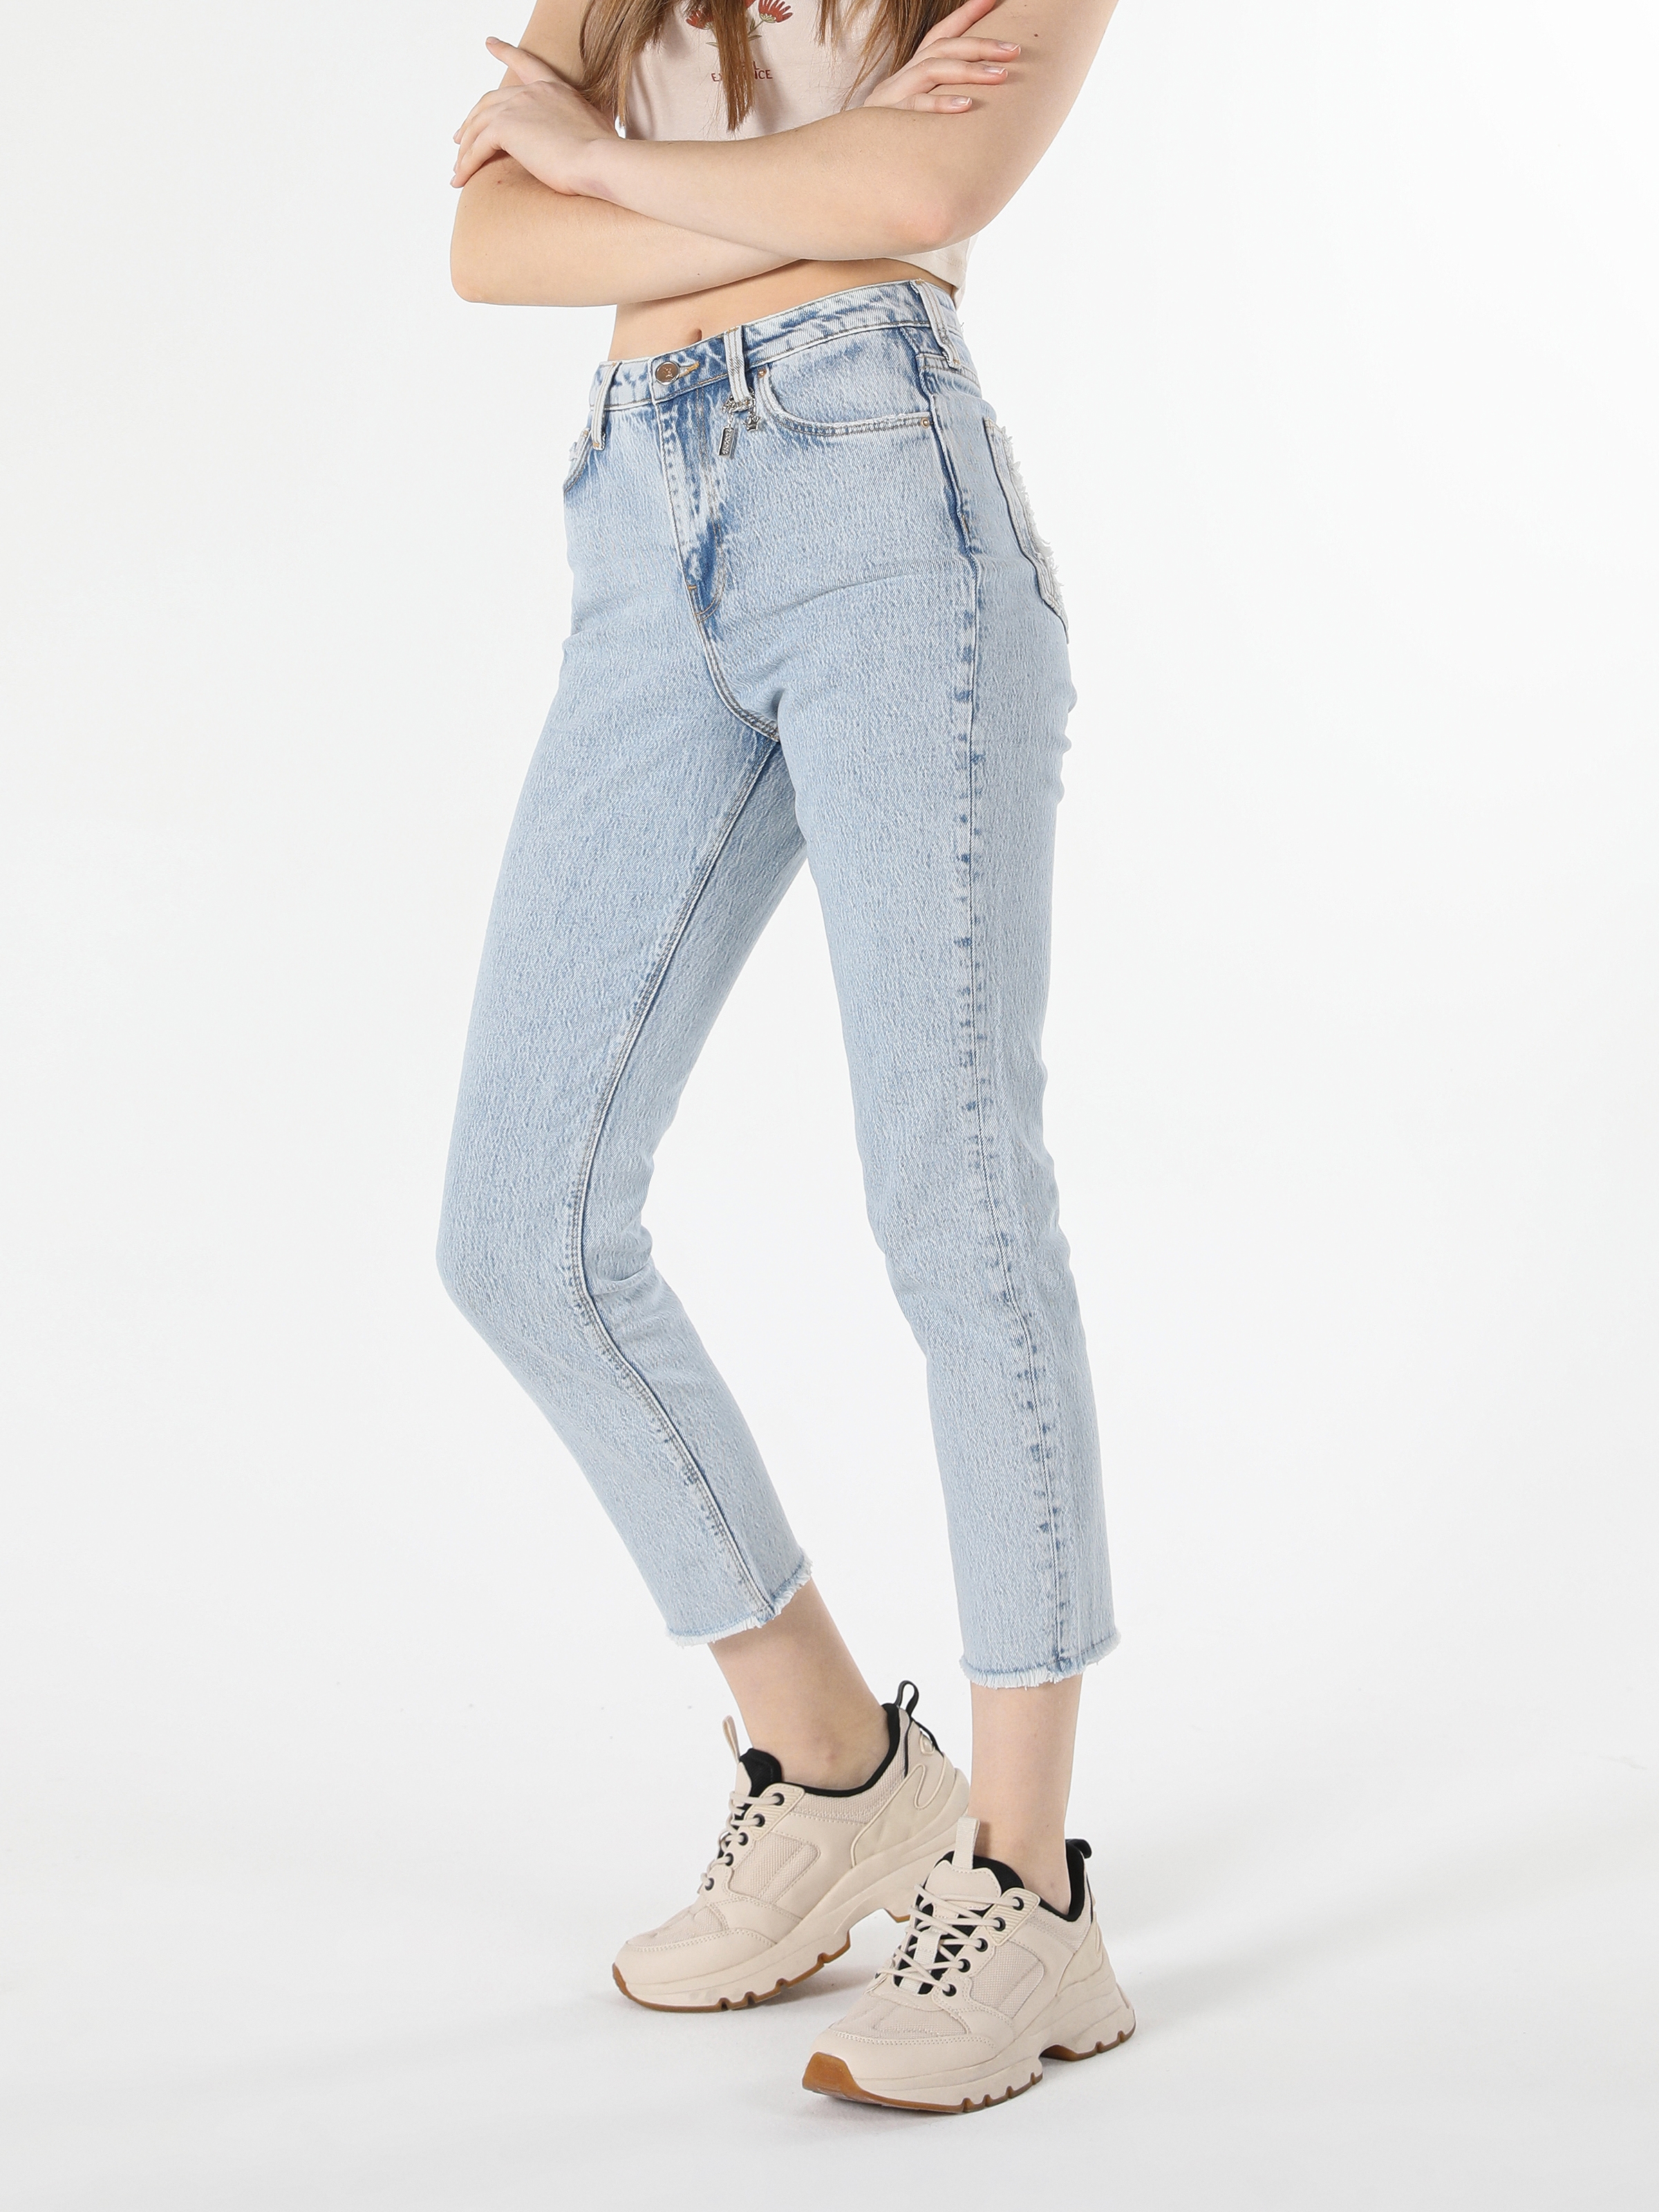 Afficher les détails de Pantalon Femme 891 Maya Coupe Slim Taille Normale Jean